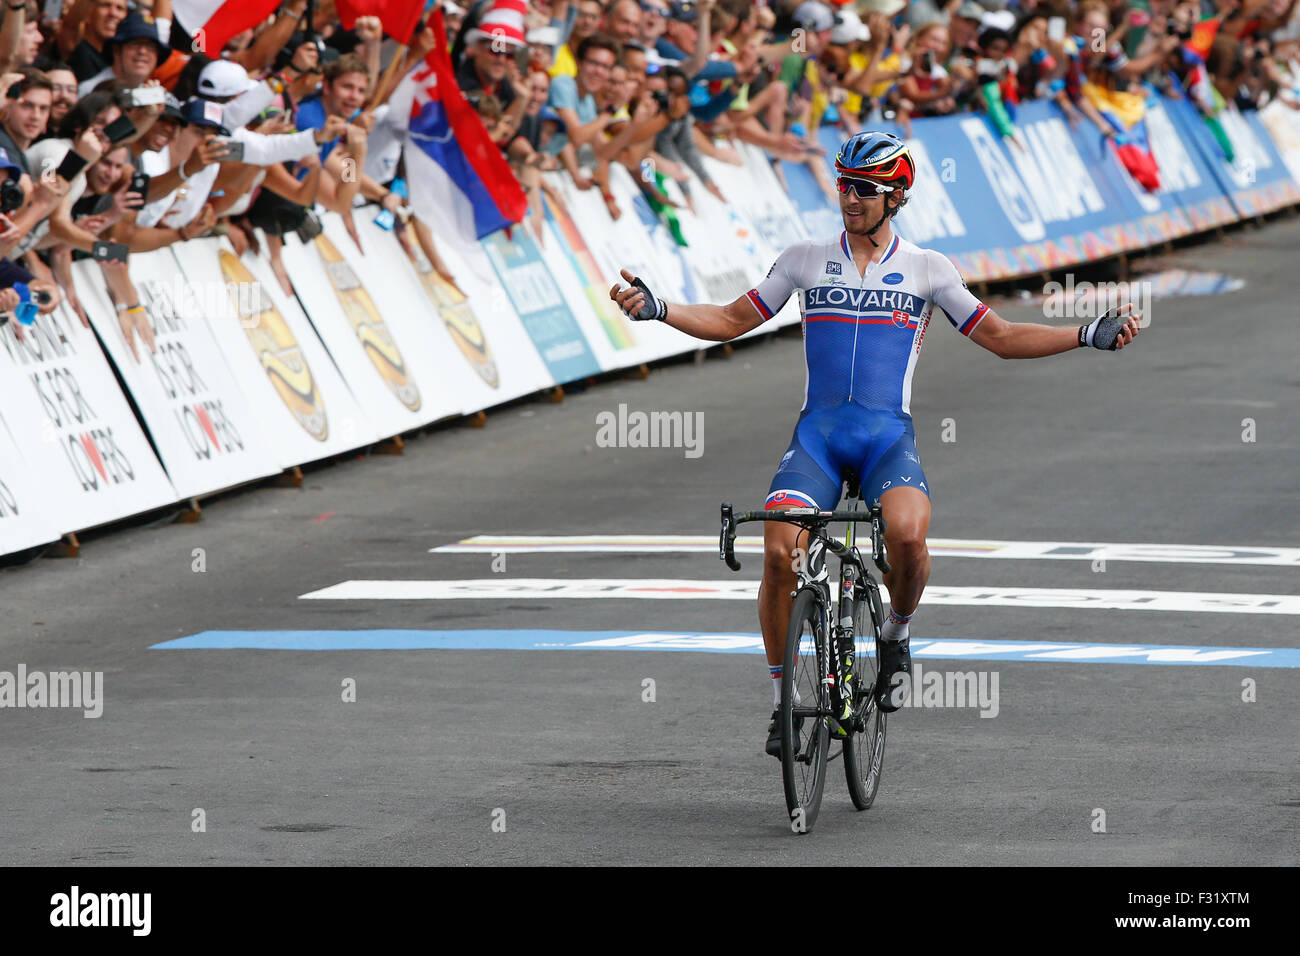 Slowakische Radfahrer Peter Sagan gewinnt den Elite UCI Straßen Rad WM 2015  in Richmond, Virginia Stockfotografie - Alamy